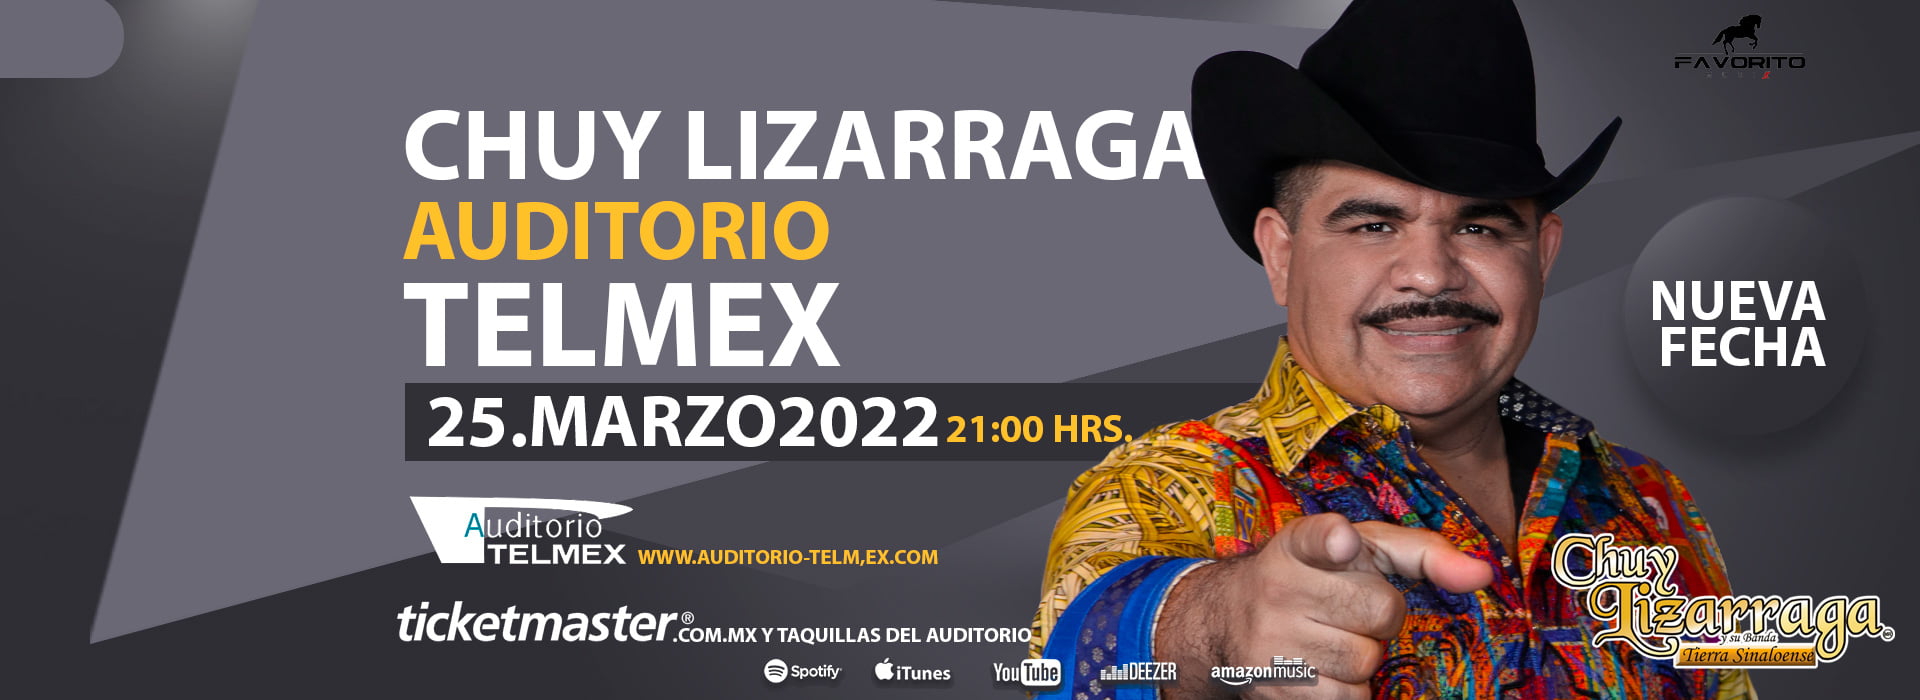 Chuy Lizarraga traerá grandes sorpresas al Auditorio Telmex